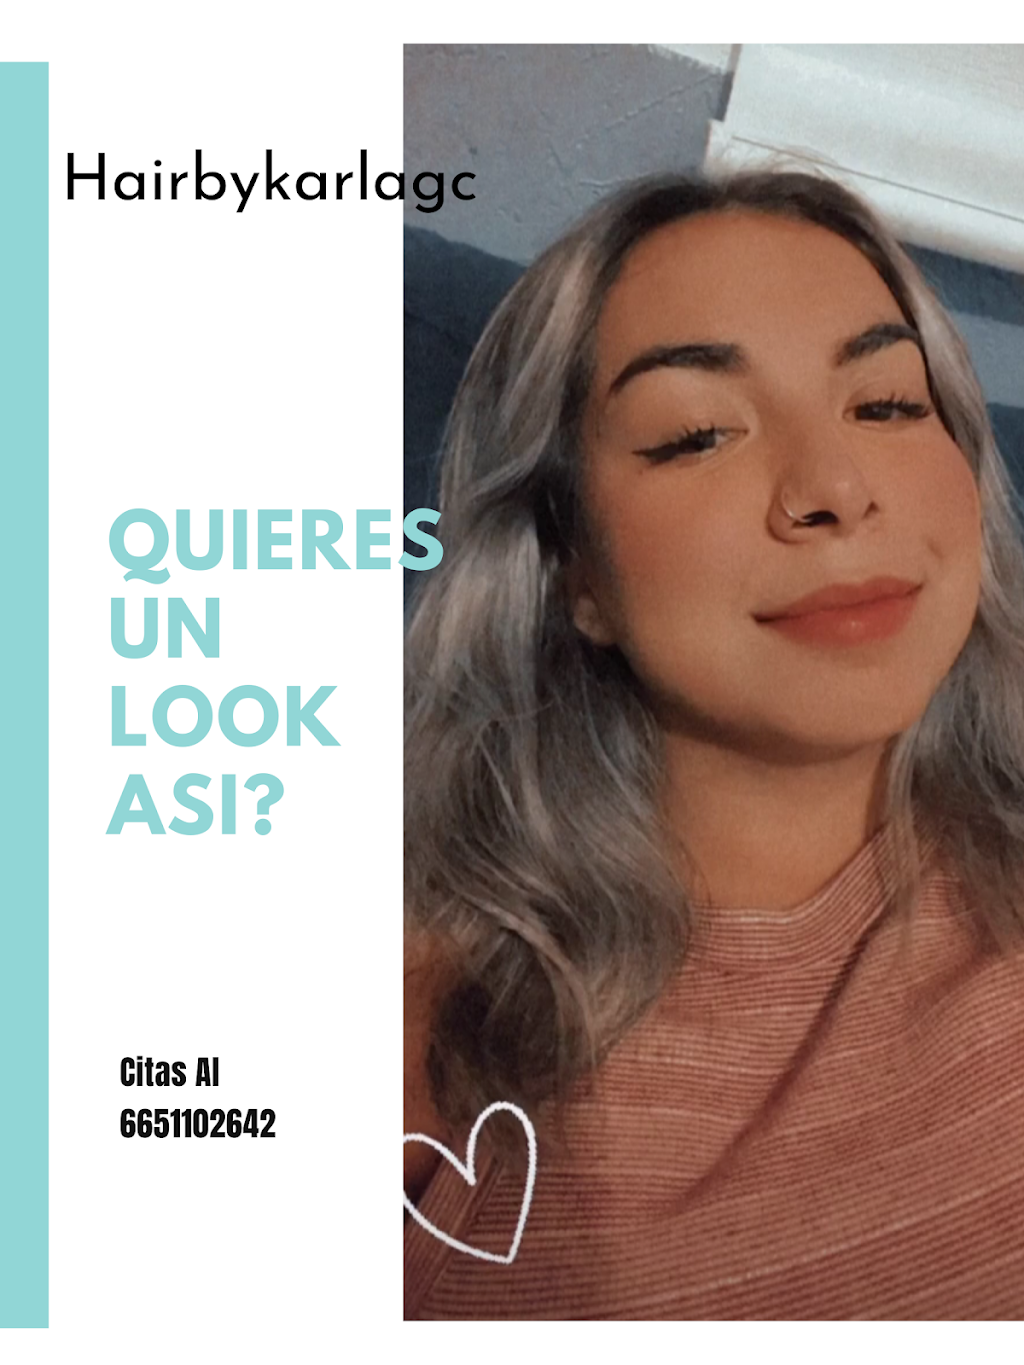 Denise hair and makeup | 1074 #4 Calle ensenada, Cuchuma, Colinas del Cuchuma, 21449 Tecate, B.C., Mexico | Phone: 665 110 2642